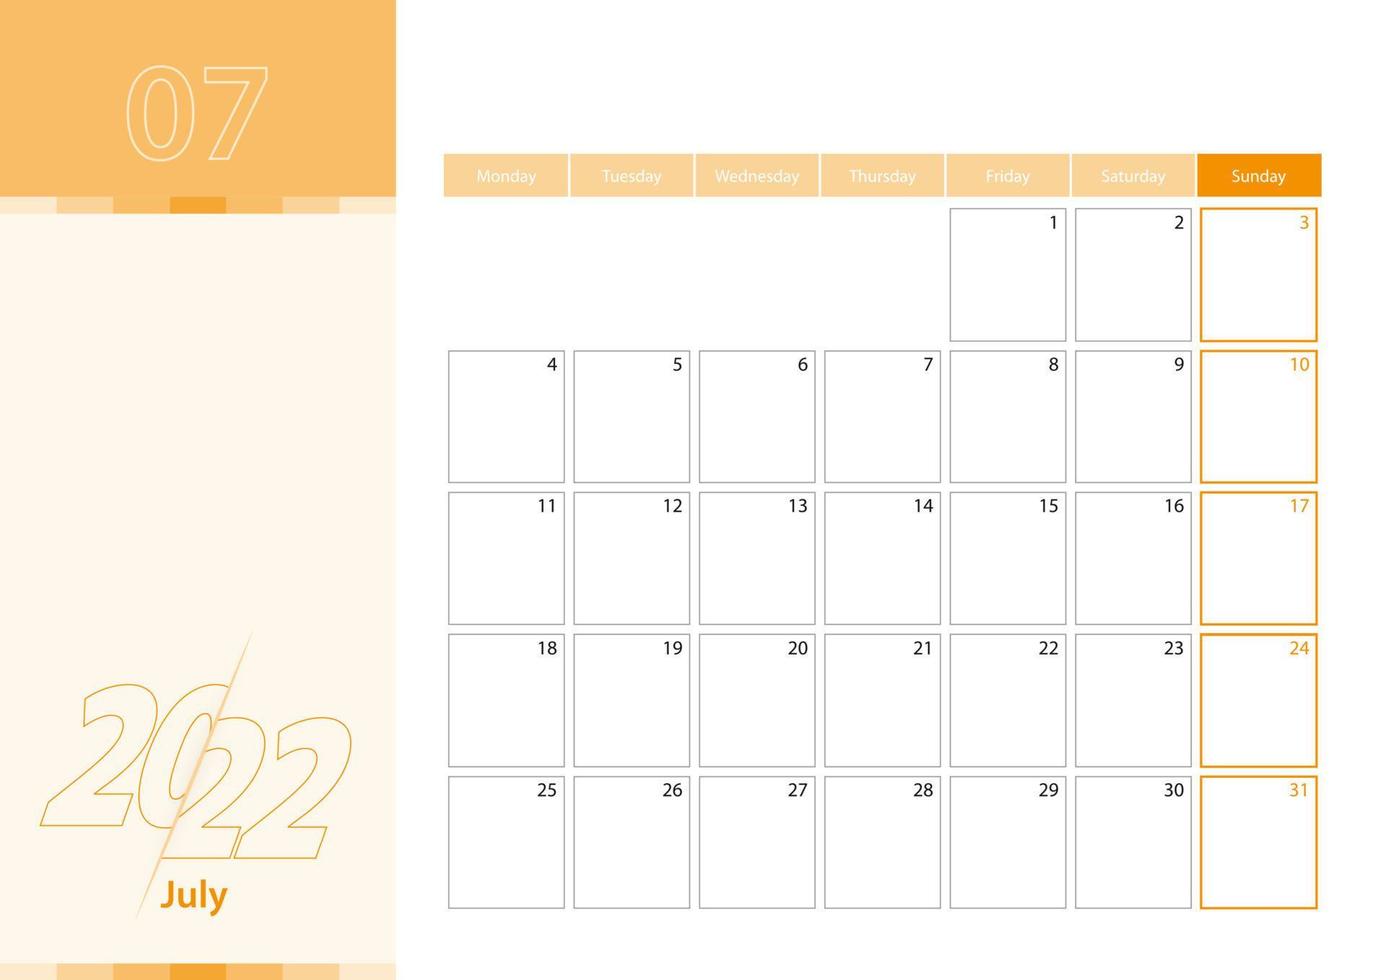 planificateur horizontal pour juillet 2022 dans la palette de couleurs orange. la semaine commence le lundi. un calendrier mural dans un style minimaliste. vecteur